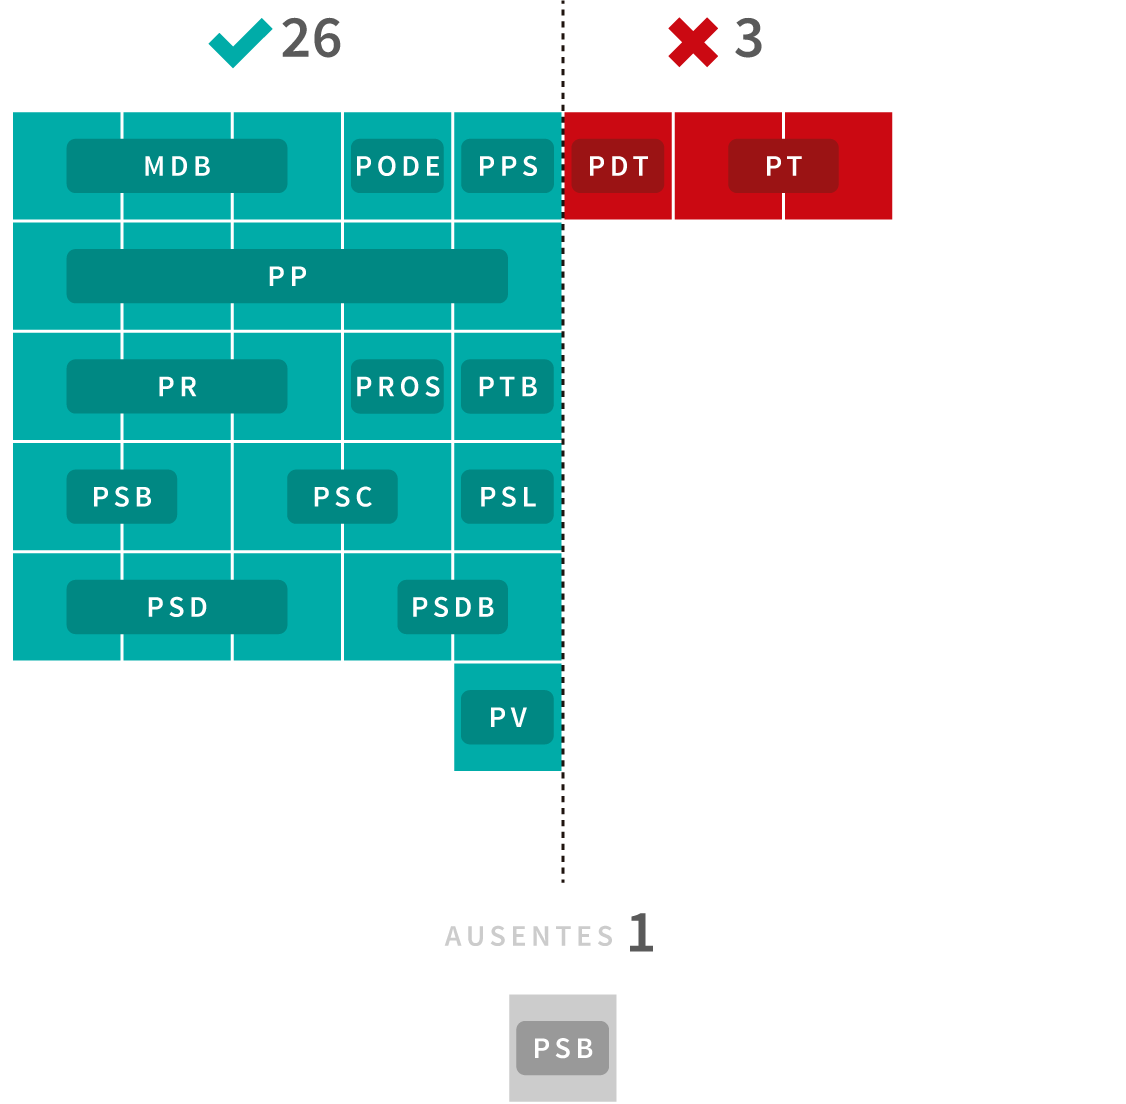 Infográfico: Veja como votaram os deputados federais paranaenses a respeito da Pec do teto dos gastos públicos em segundo turno